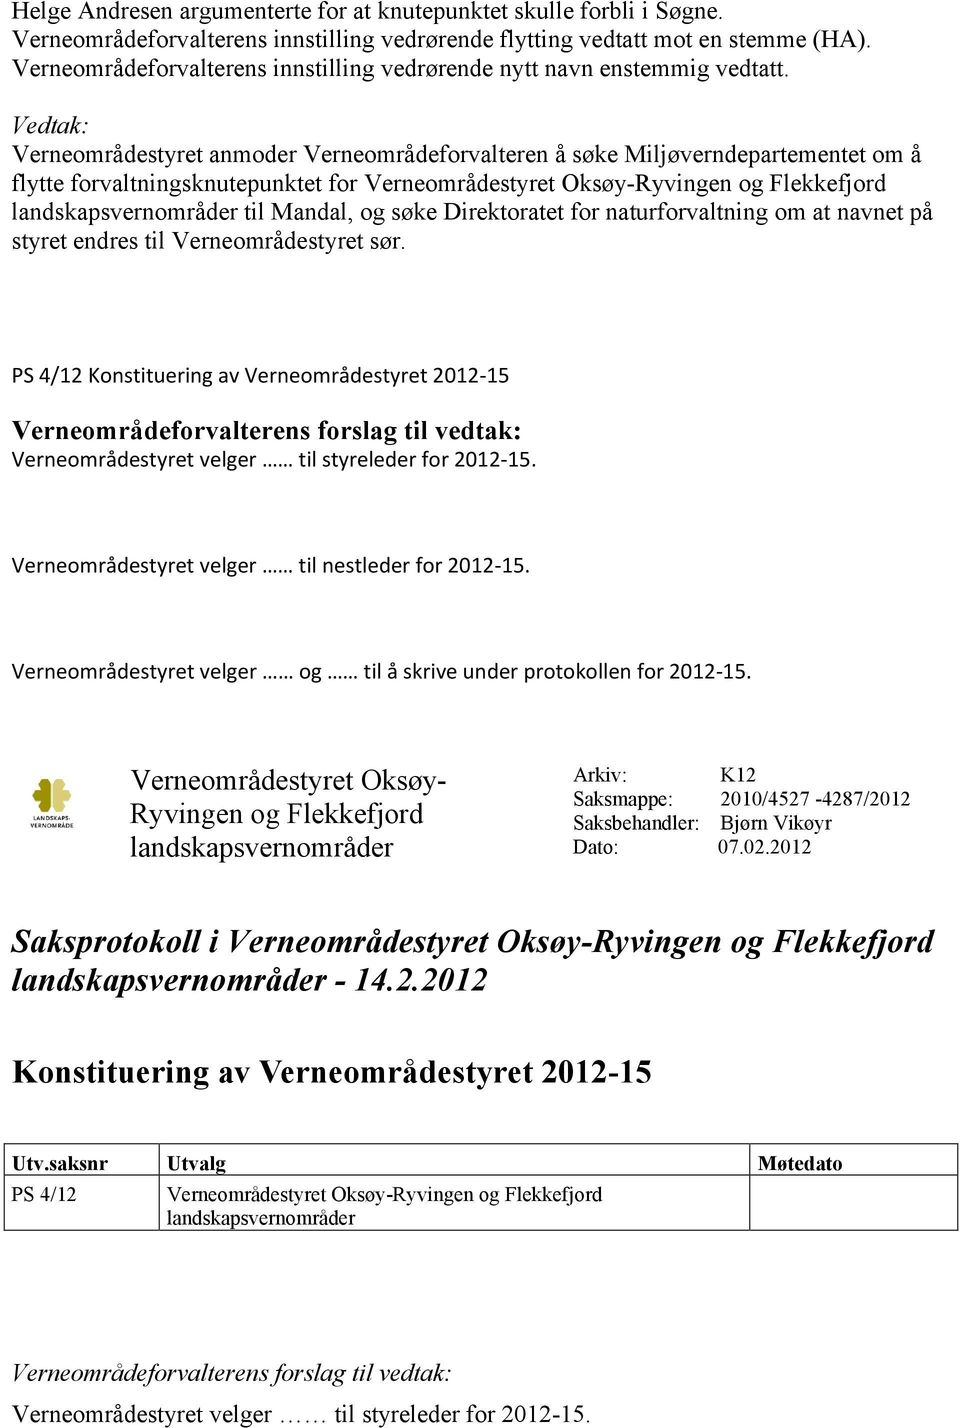 Verneområdestyret anmoder Verneområdeforvalteren å søke Miljøverndepartementet om å flytte forvaltningsknutepunktet for Verneområdestyret Oksøy-Ryvingen og Flekkefjord til Mandal, og søke